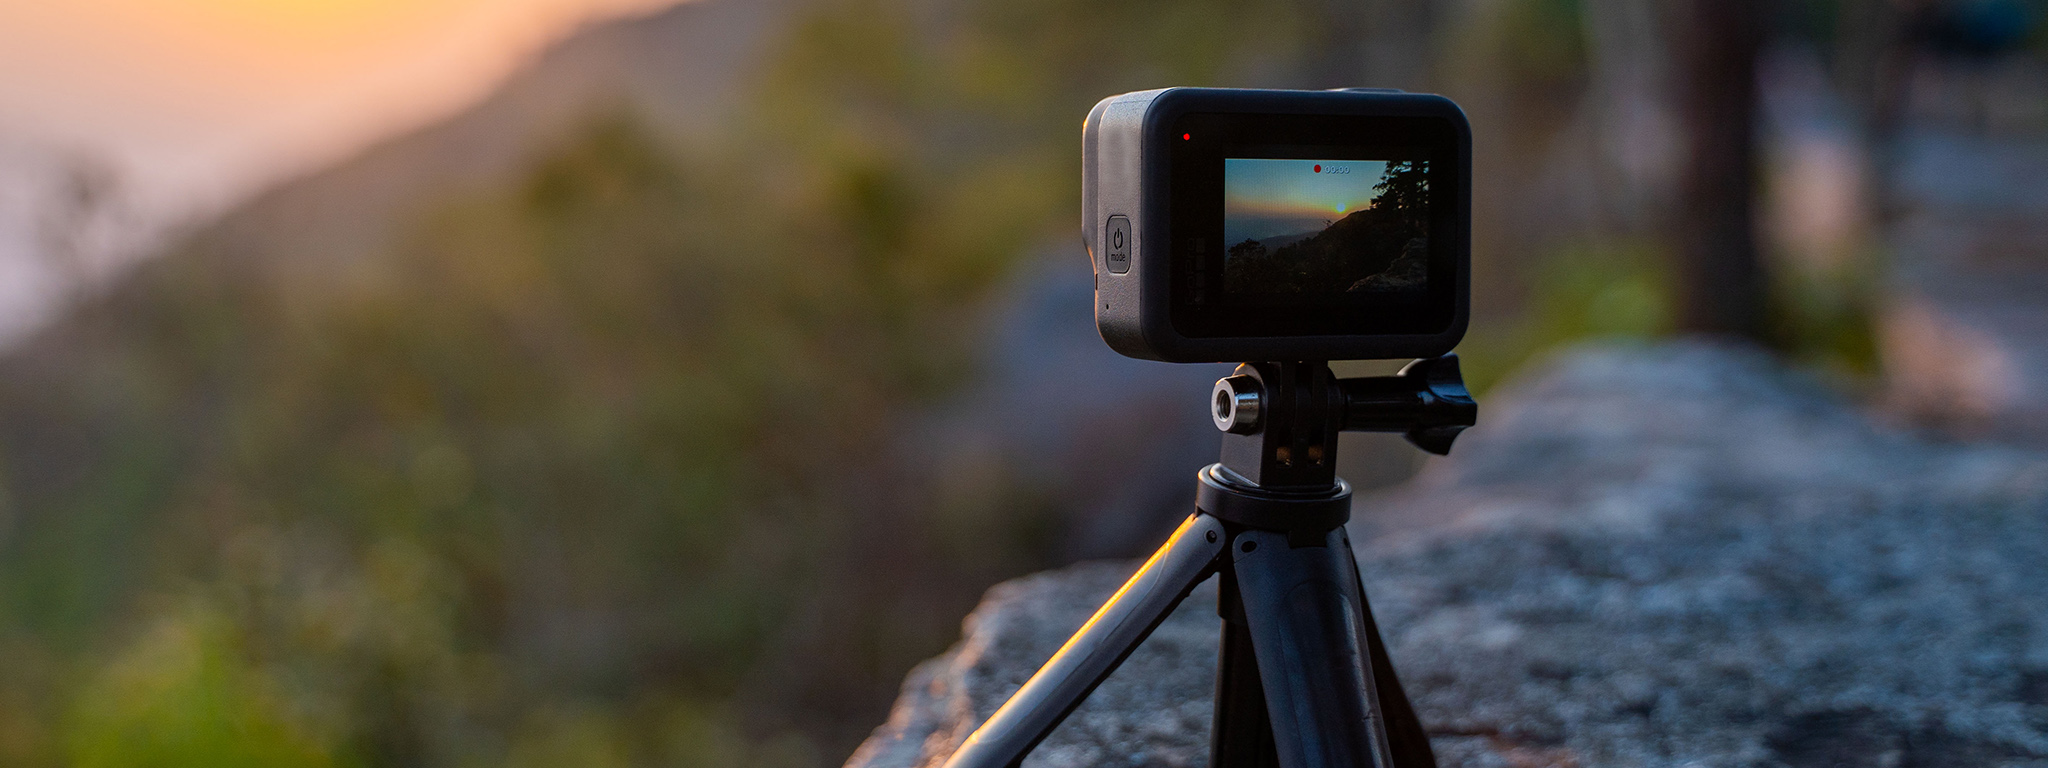 Kamera GoPro nagrywająca film poklatkowy z zachodem słońca